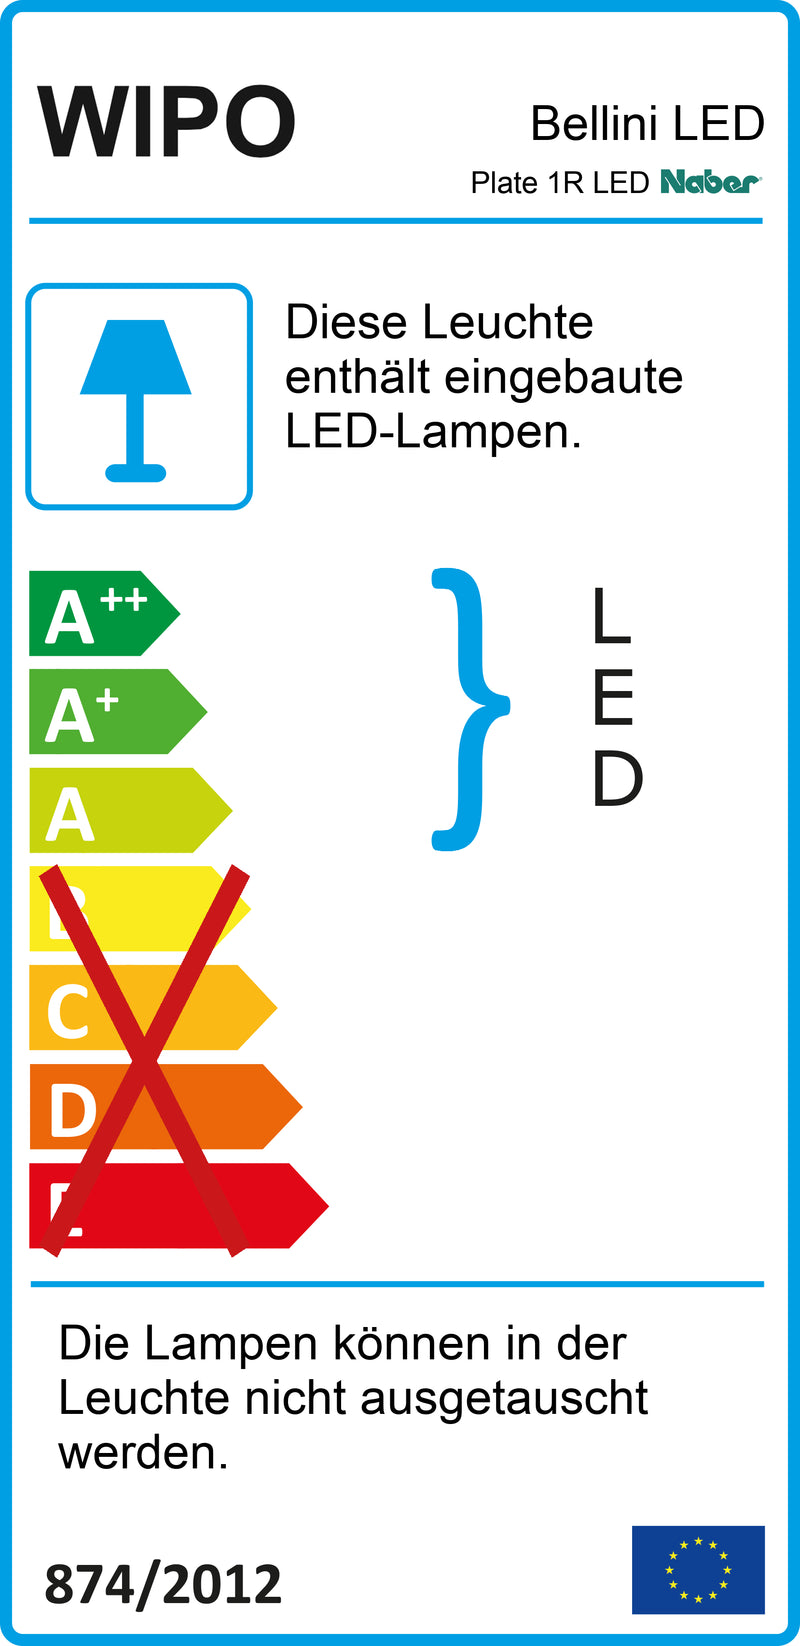 E-Label zu Zeichnung zu Zeichnung zu Plate 1R LED als Variante edelstahlfarbig von Naber GmbH in der Kategorie Lichttechnik in Österreich auf conceptshop.at